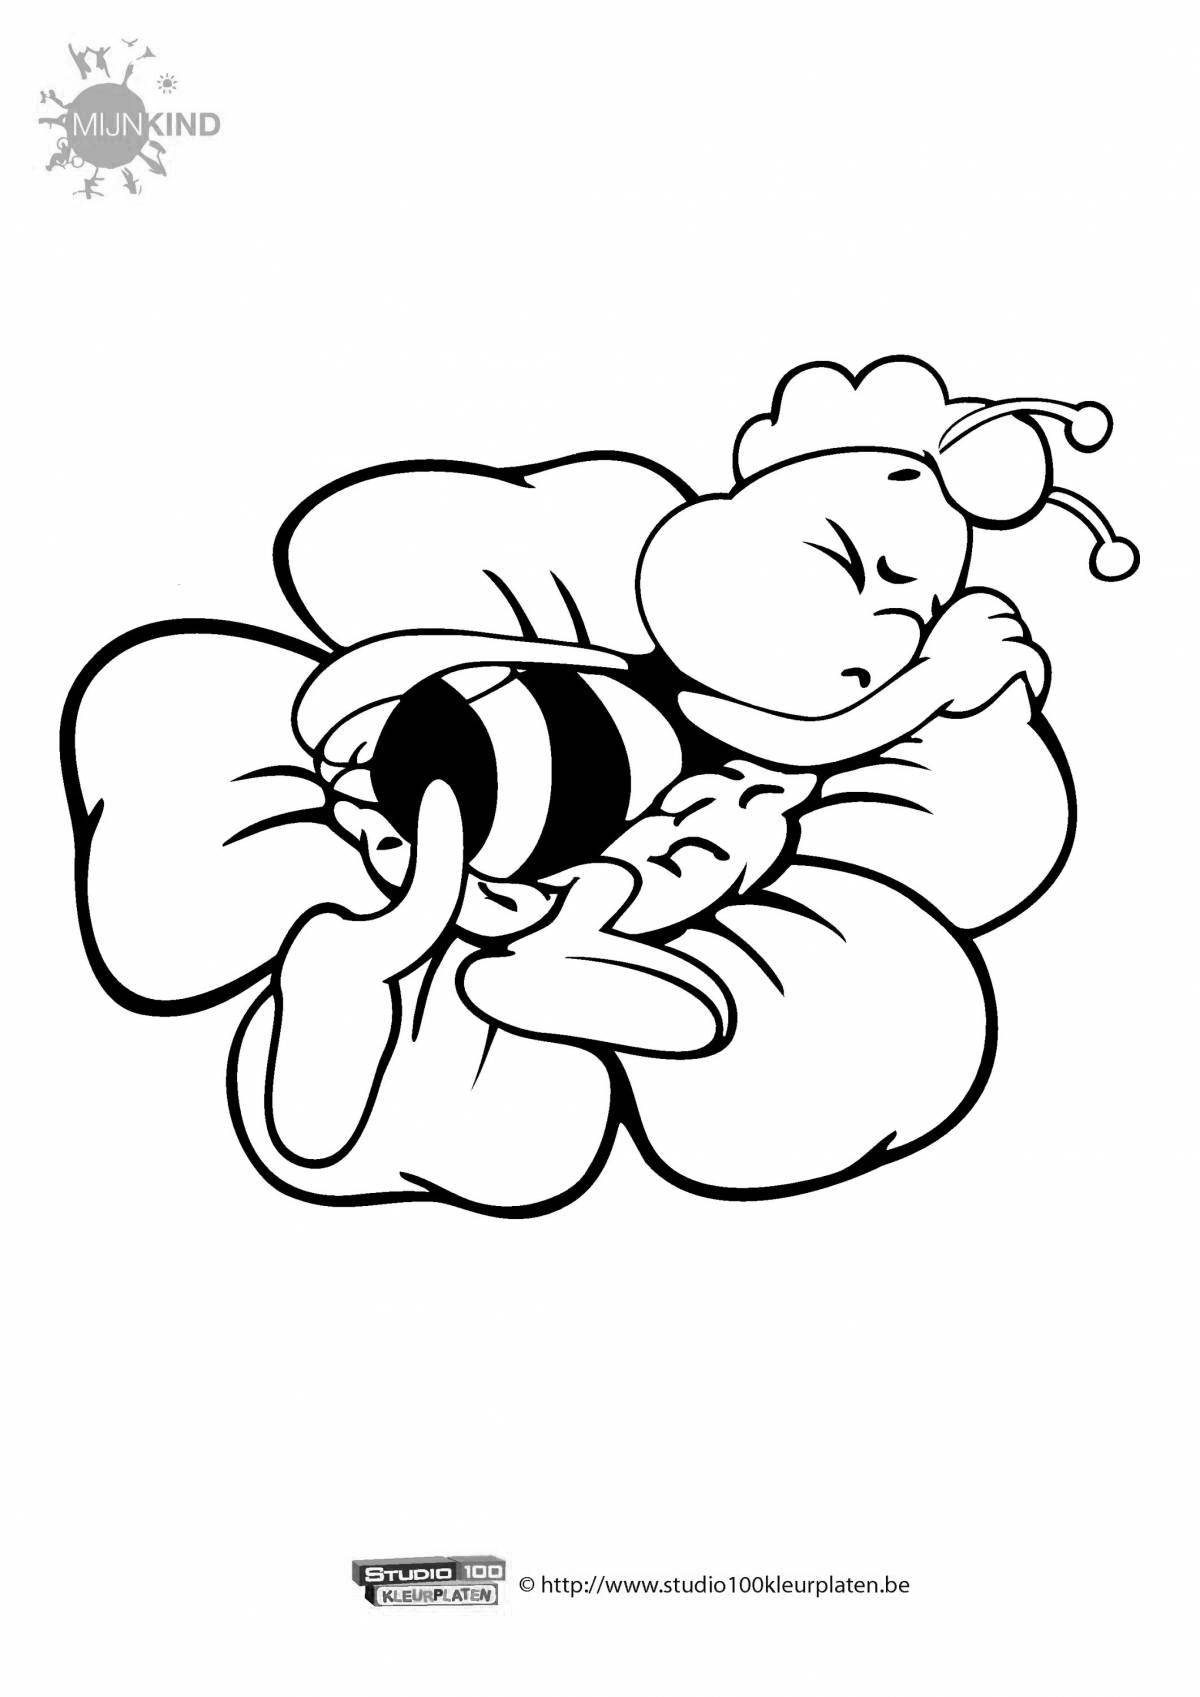 Великолепная пчела-раскраска для детей